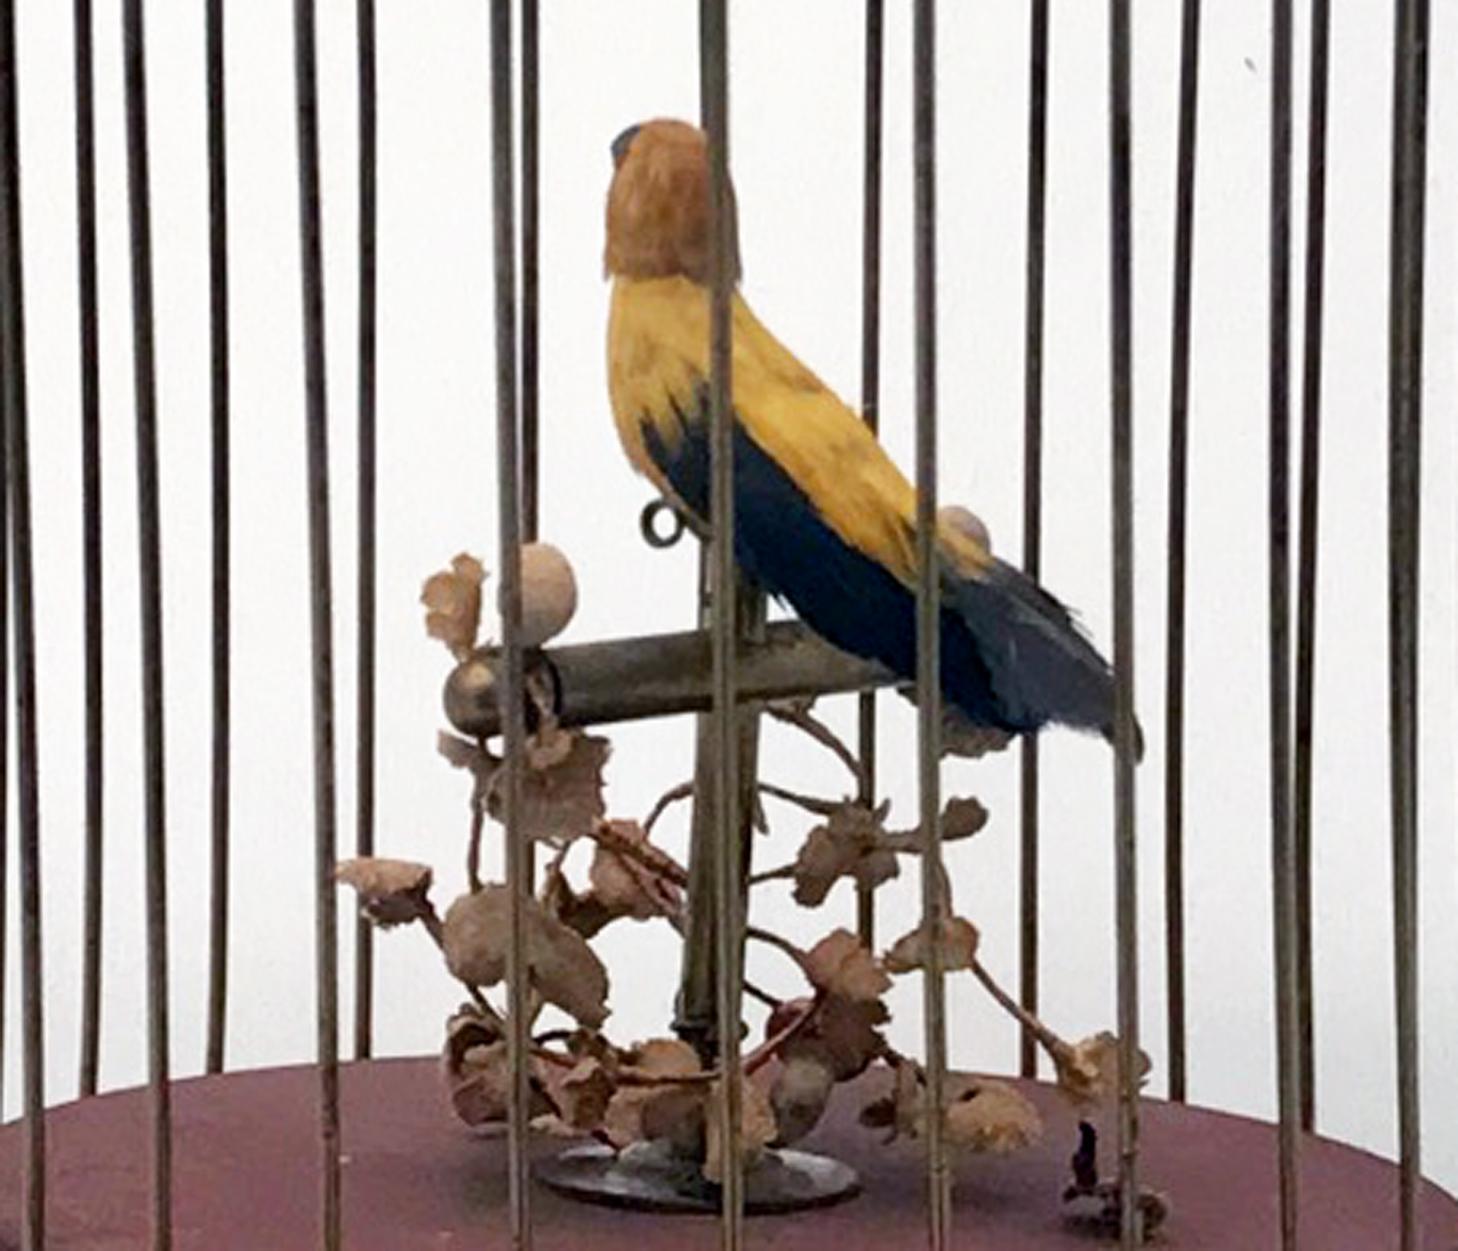 Hand-Crafted Vintage Karl Griesbaum Singing Bird Automaton